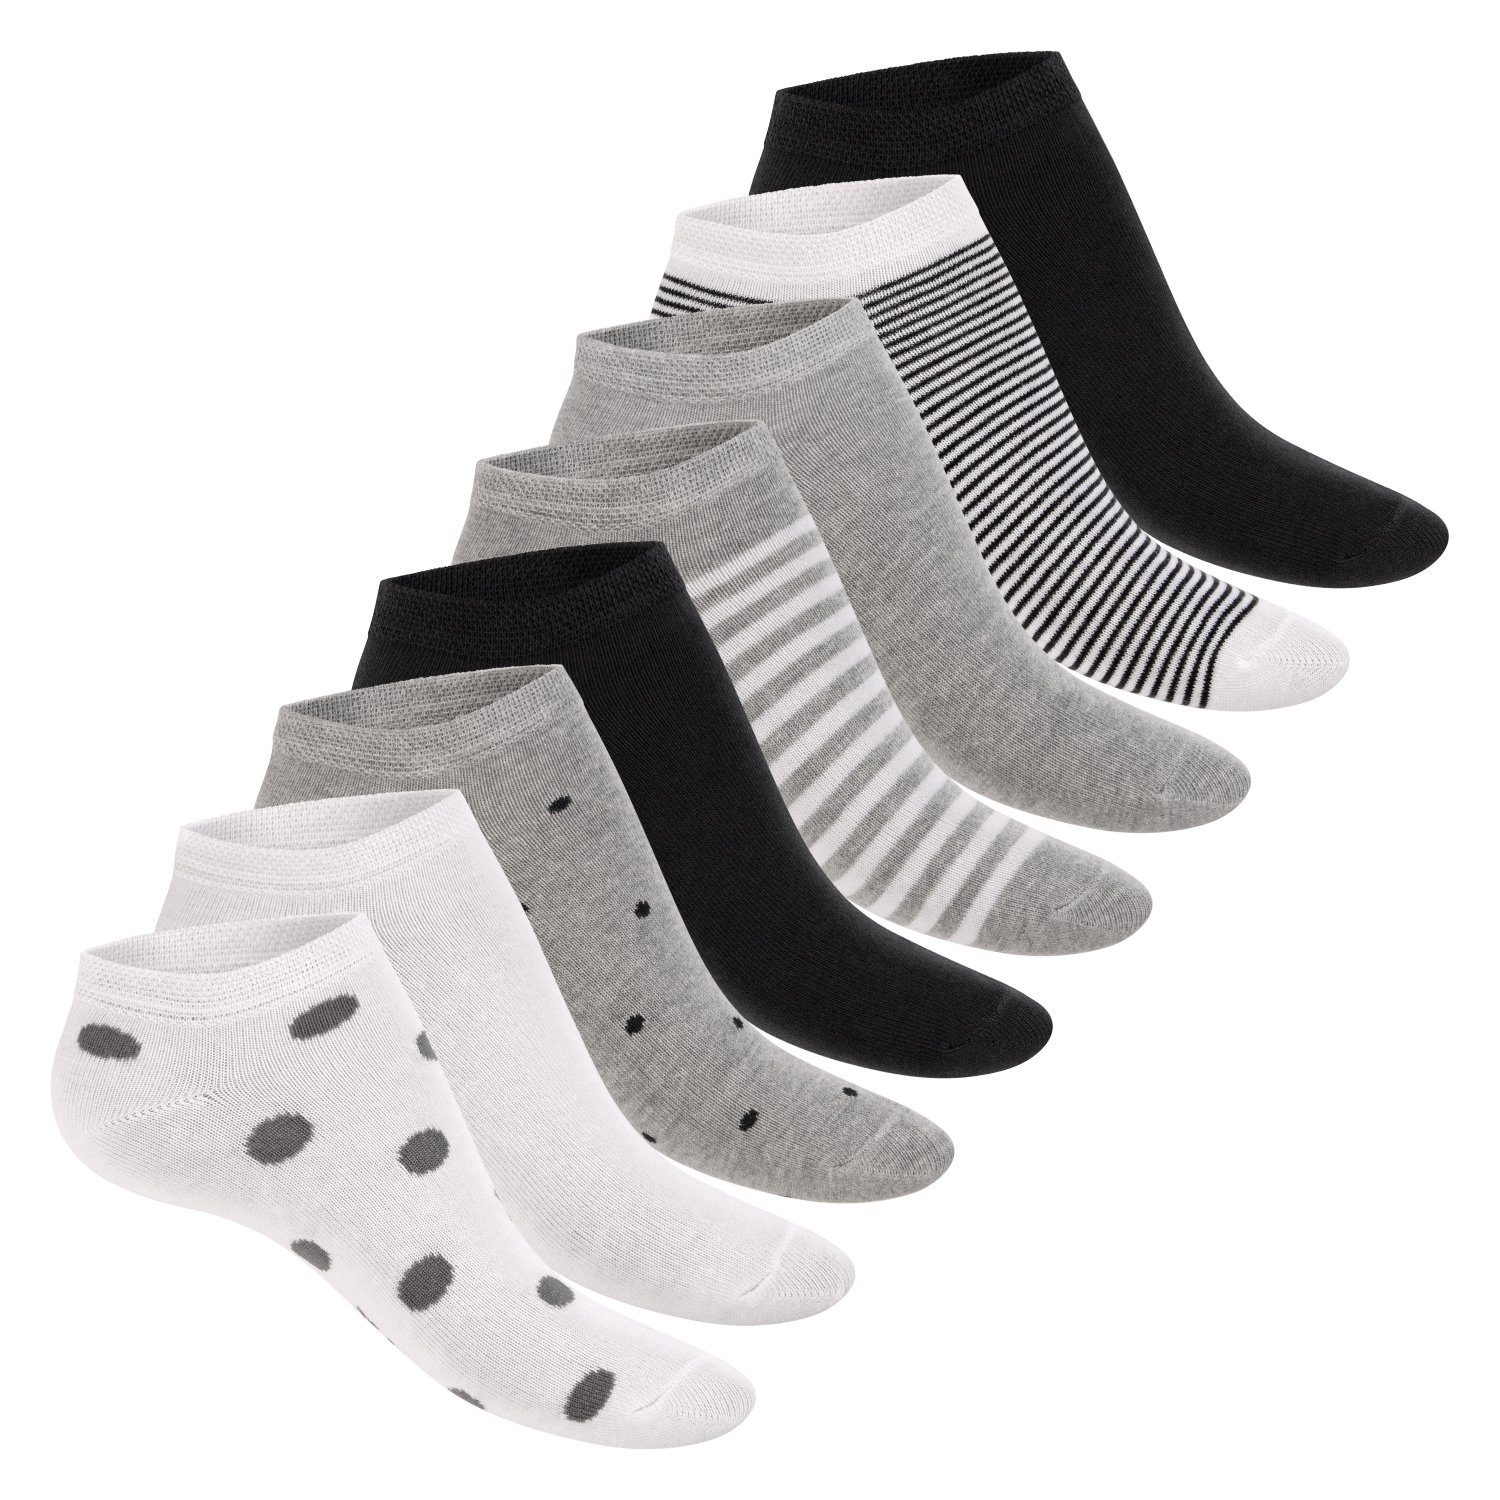 Footstar Sneakersocken süße Damen Sneaker Socken (8 Paar) Kurze Söckchen mit Muster Weiss-Schwarz / 8 Paar